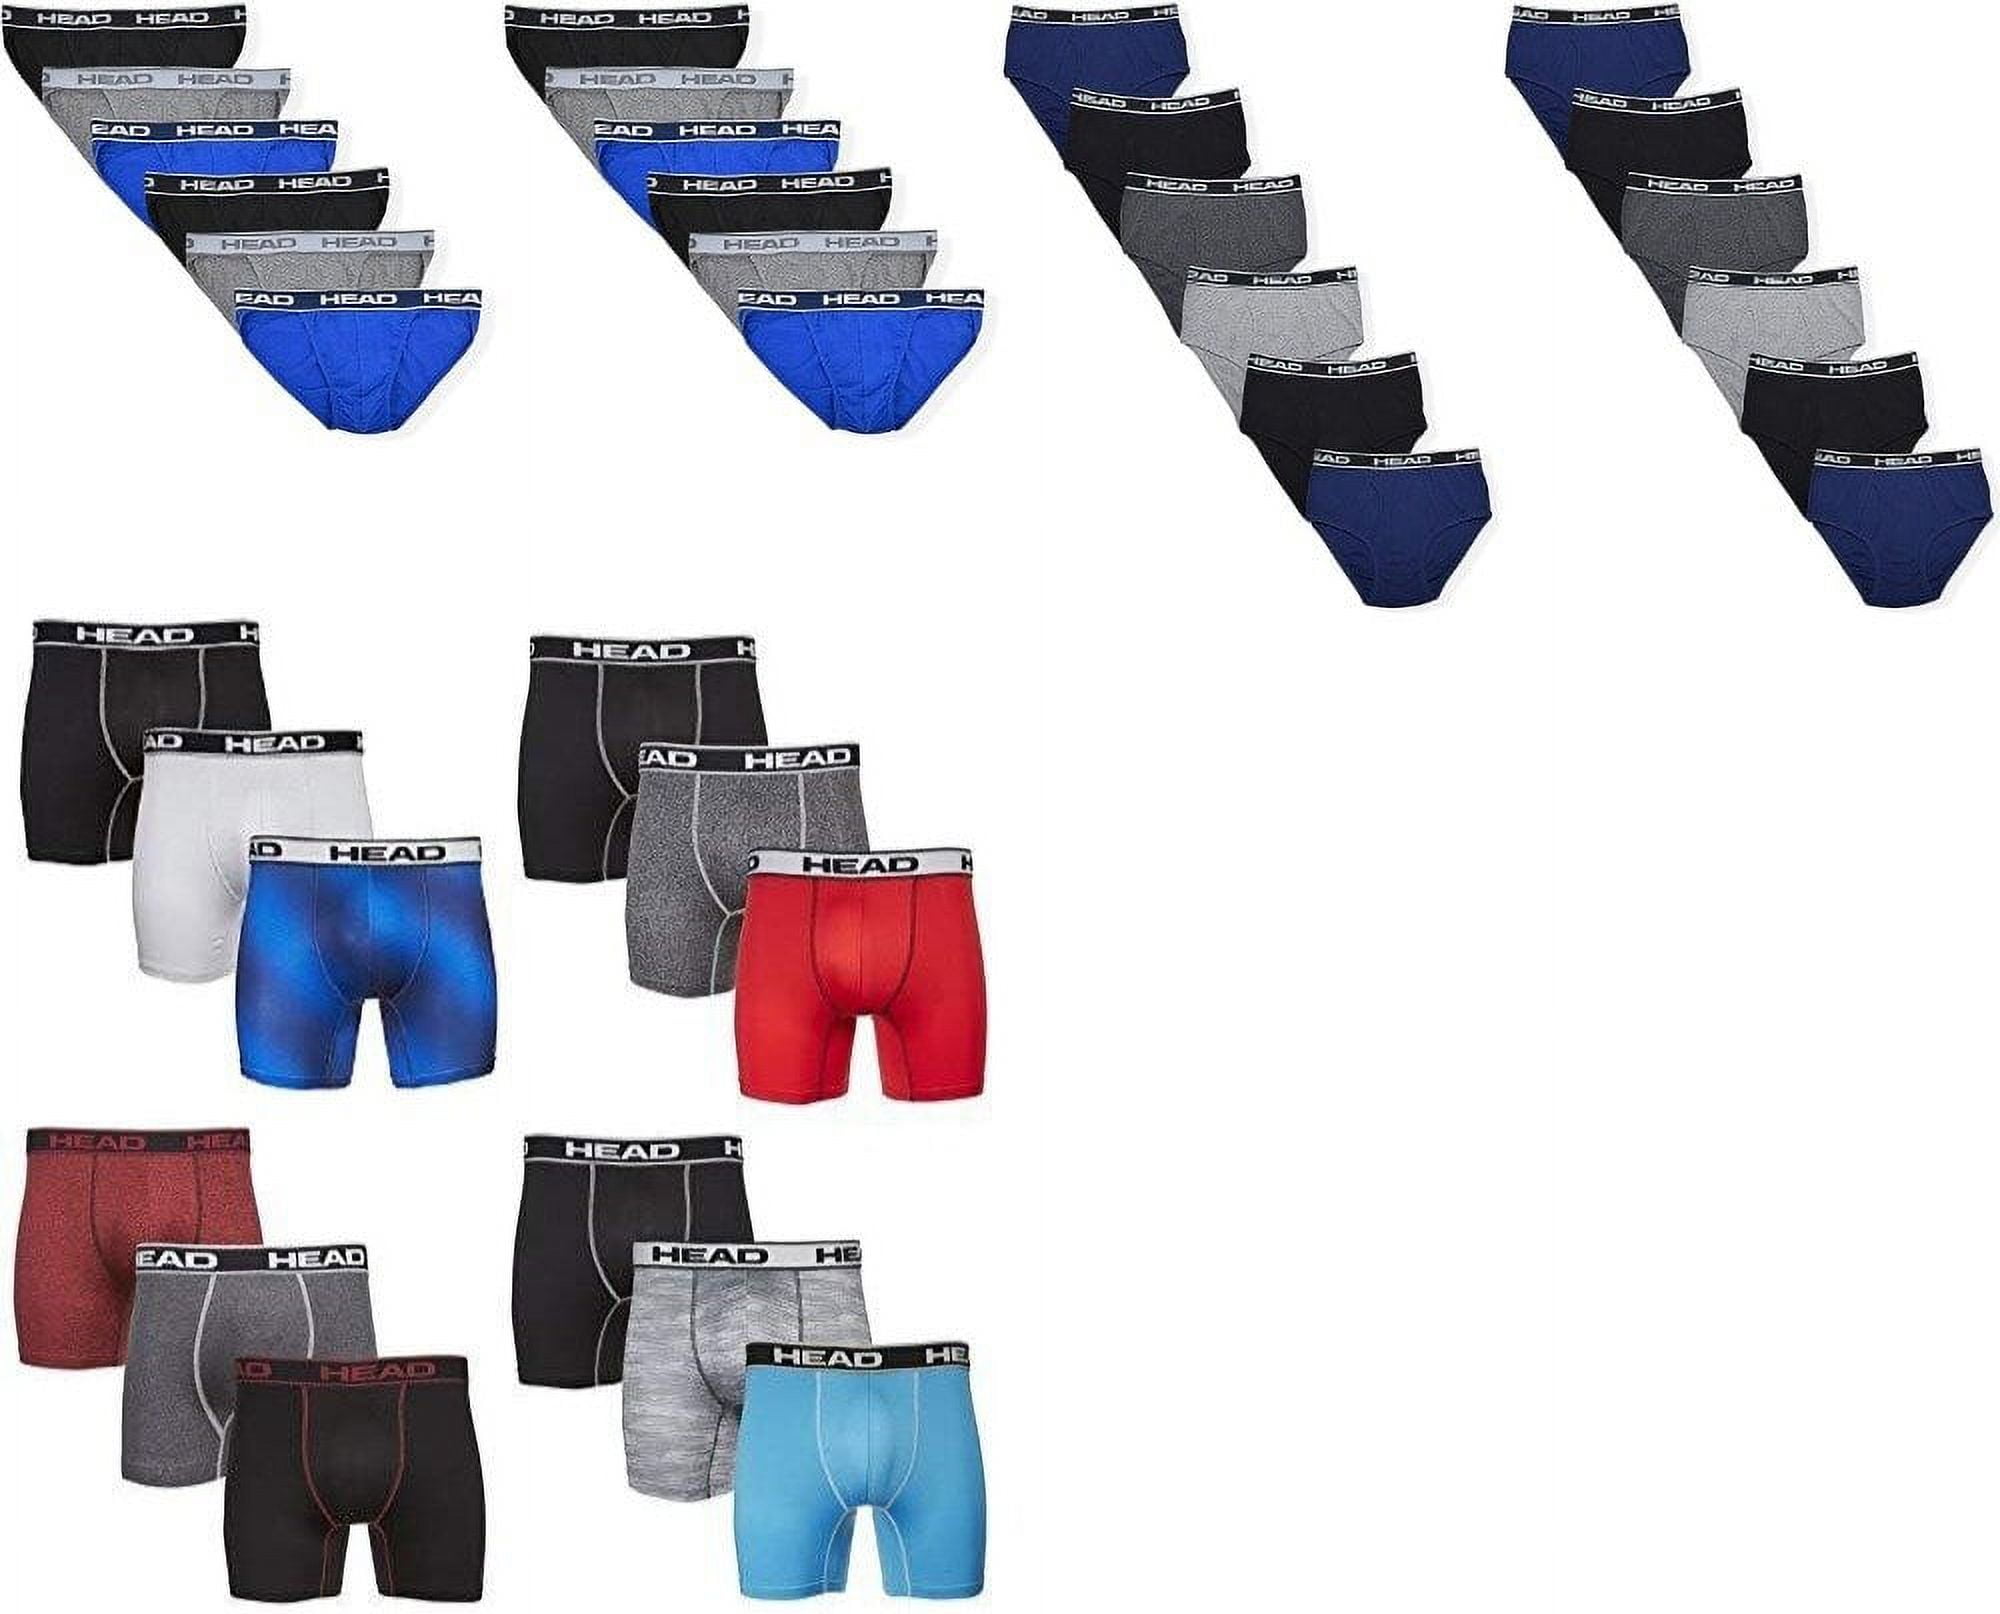 Types of Underwear for Men